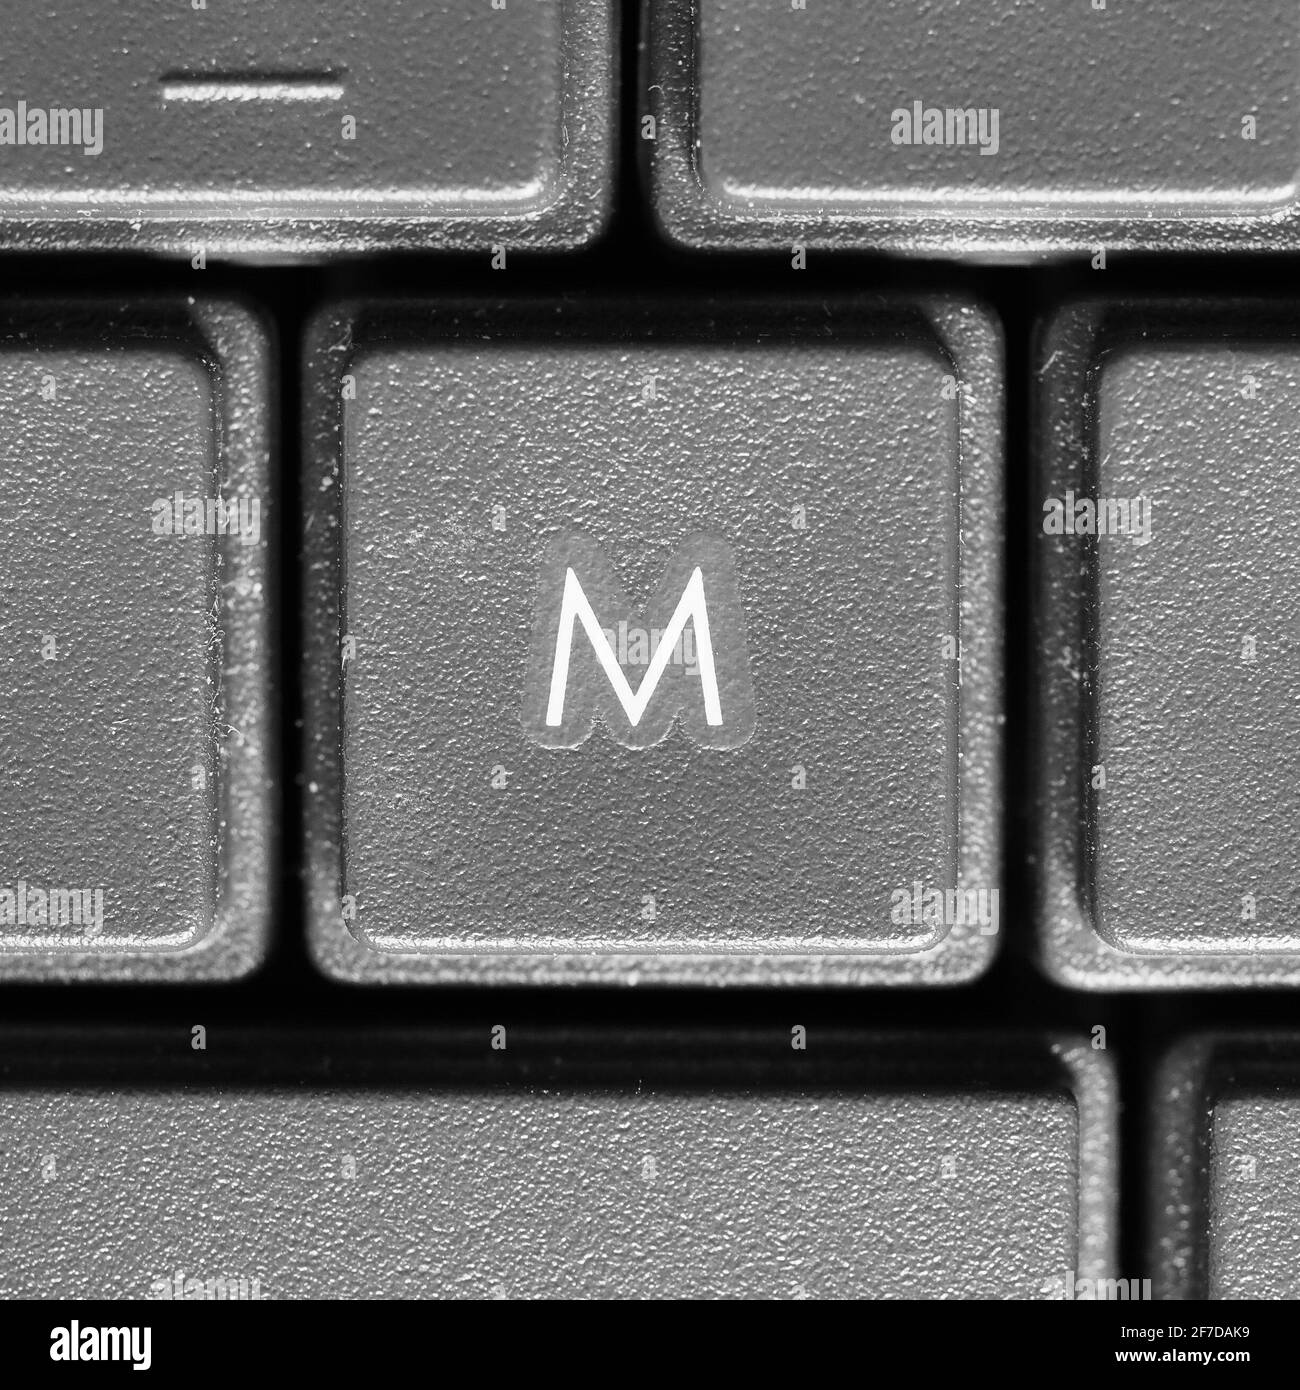 Buchstabe M-Taste auf der Tastatur des Computers Stockfotografie - Alamy